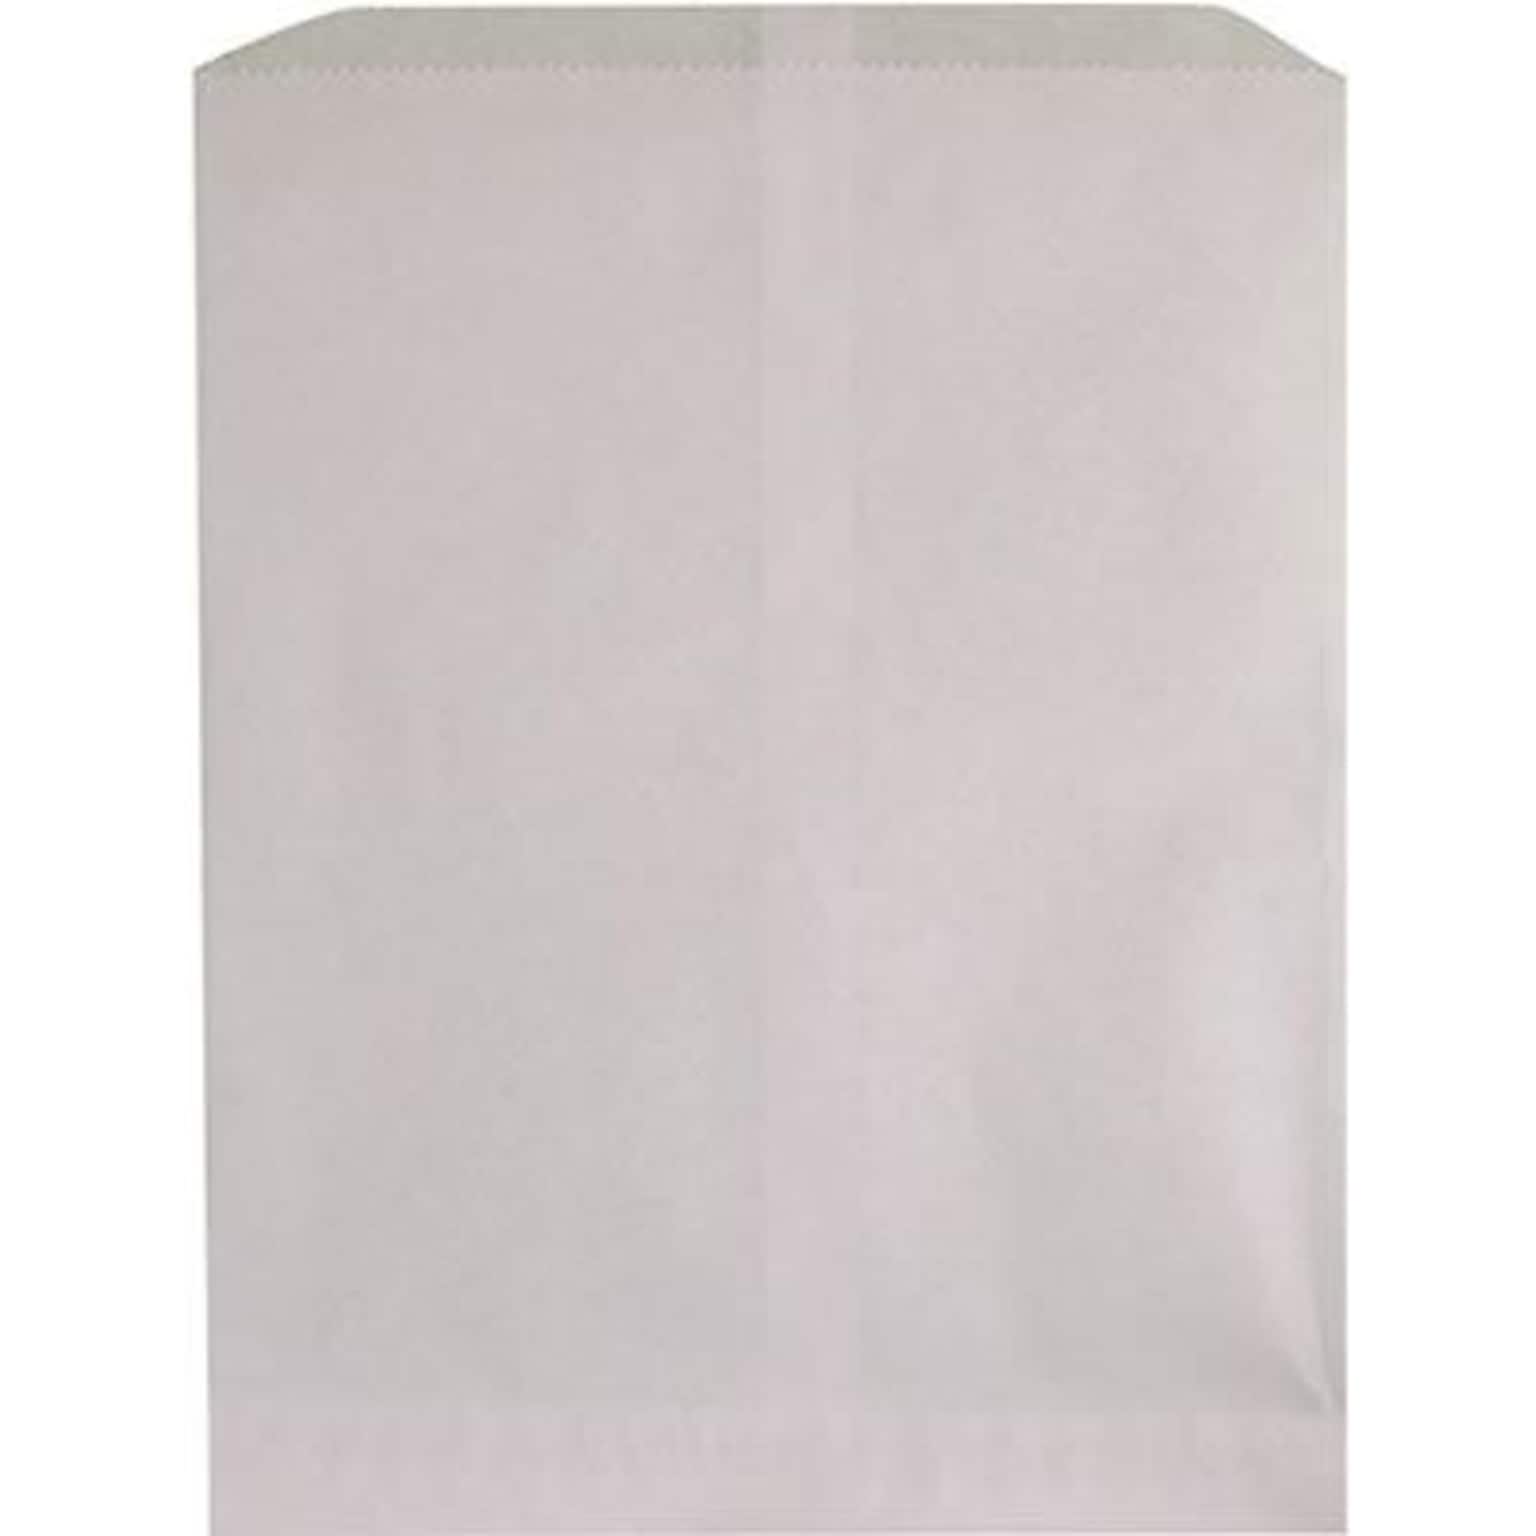 Hygloss® 11 x 8 1/2 Pinch Bottom Craft Paper Bag, White, 50/PK, 3 PK/BD